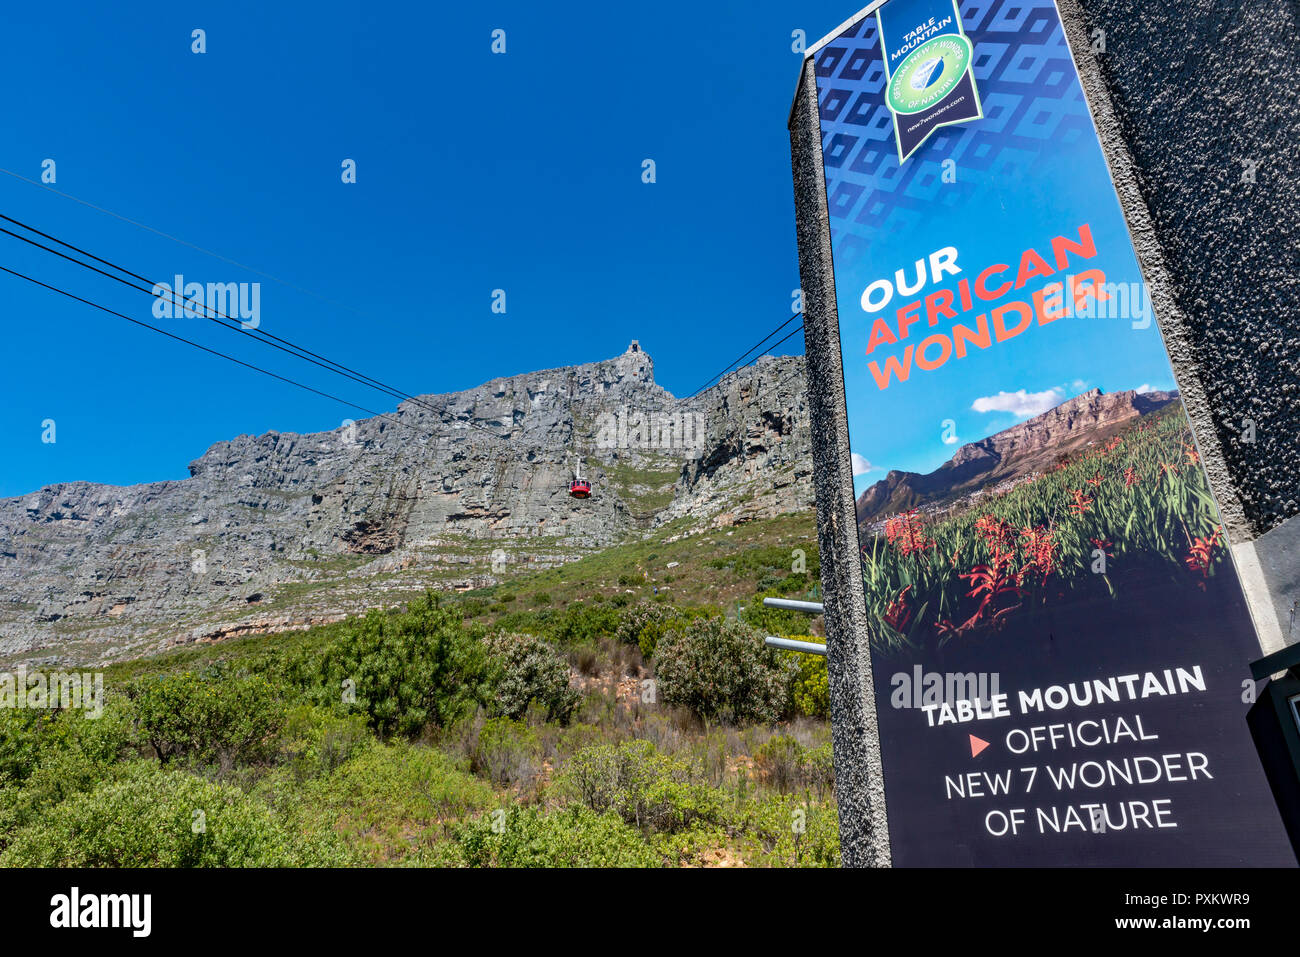 Voiture de câble allant jusqu'à la montagne de la Table, Cape Town, Afrique du Sud Banque D'Images